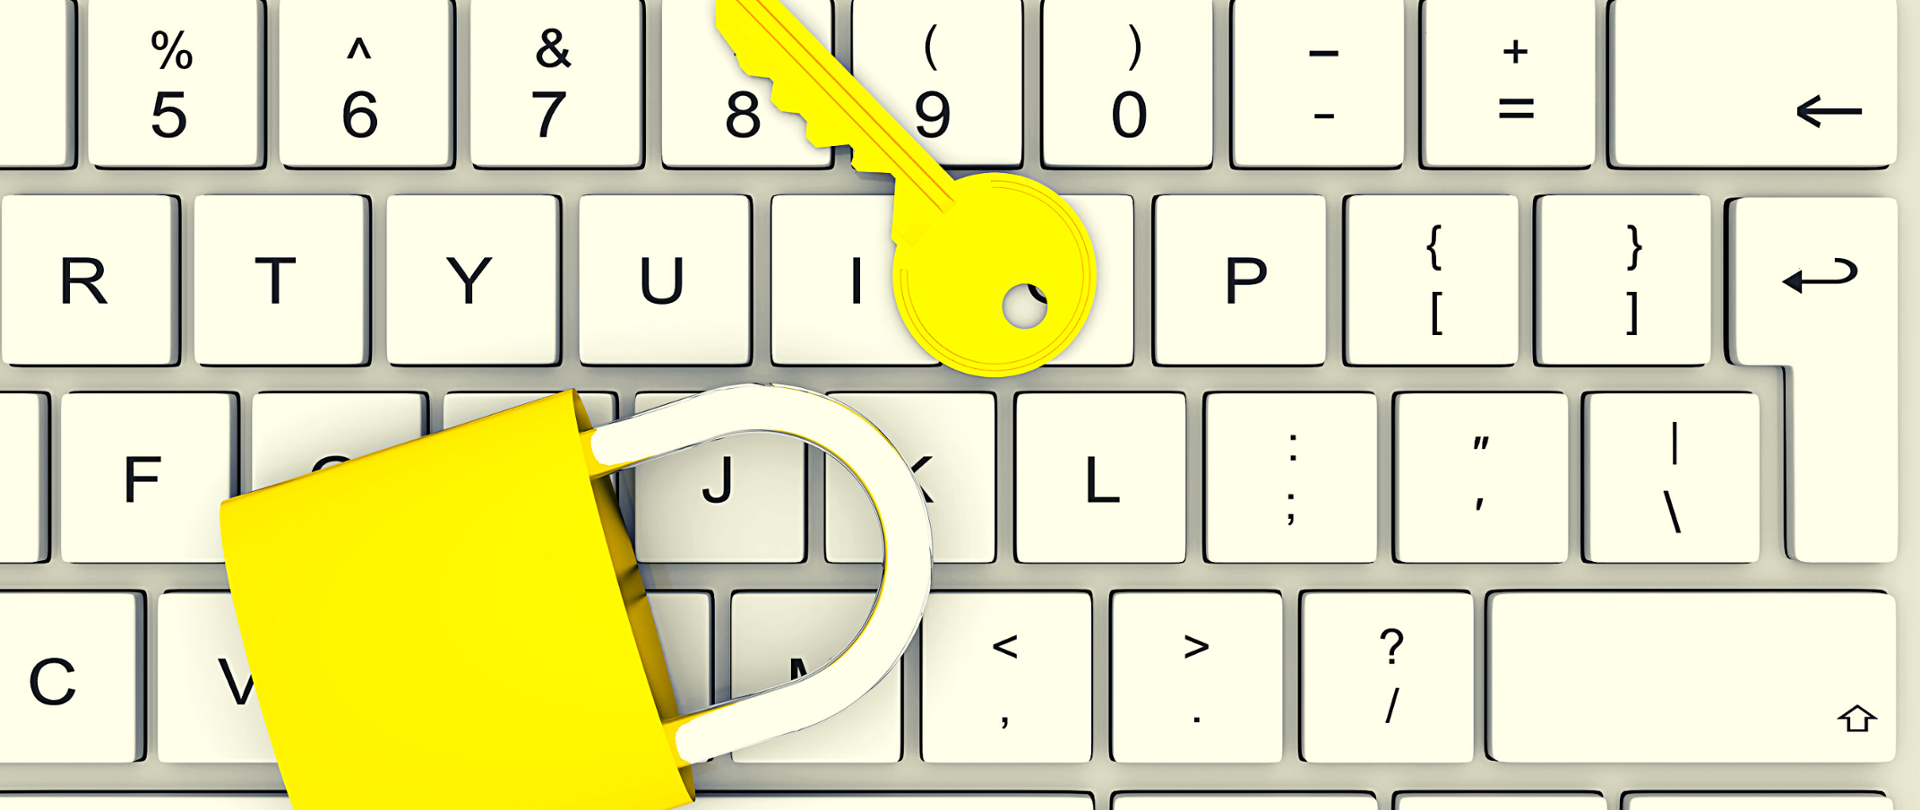 Biała klawiatura komputerowa, na której leżą żółta kłódka i żółty klucz